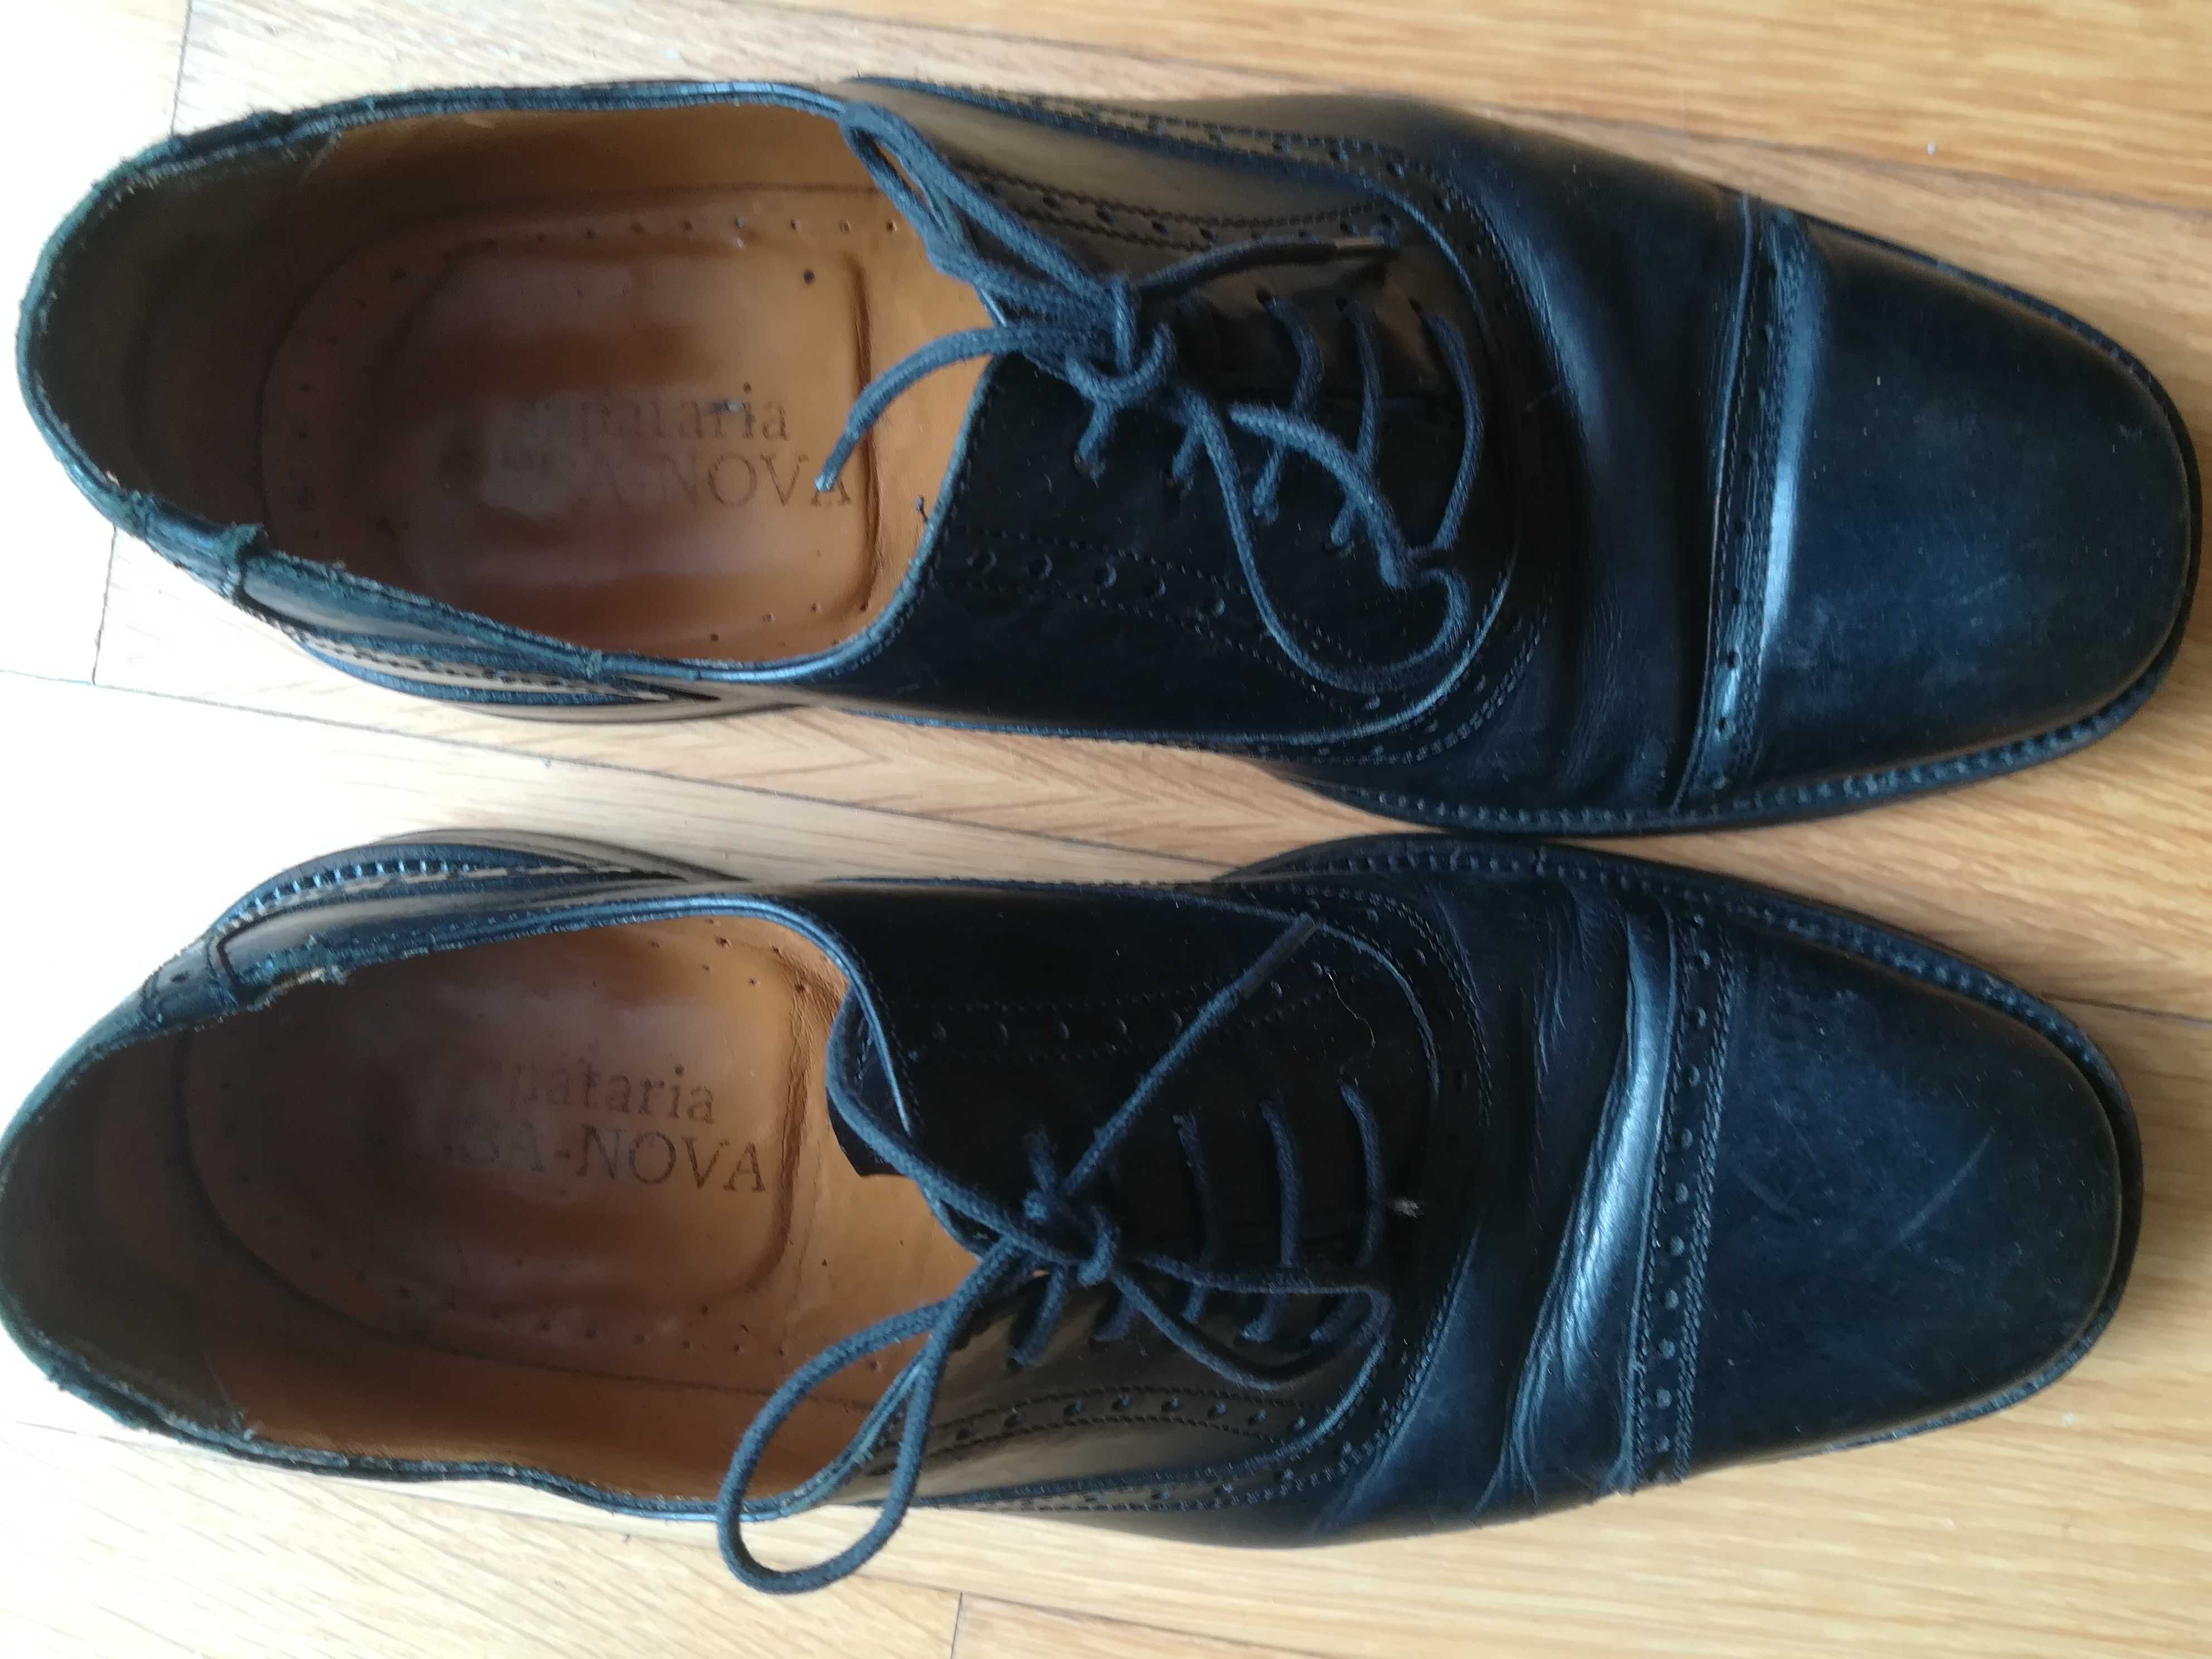 Sandália n. 41 e Sapatos pretos n. 9, para homem